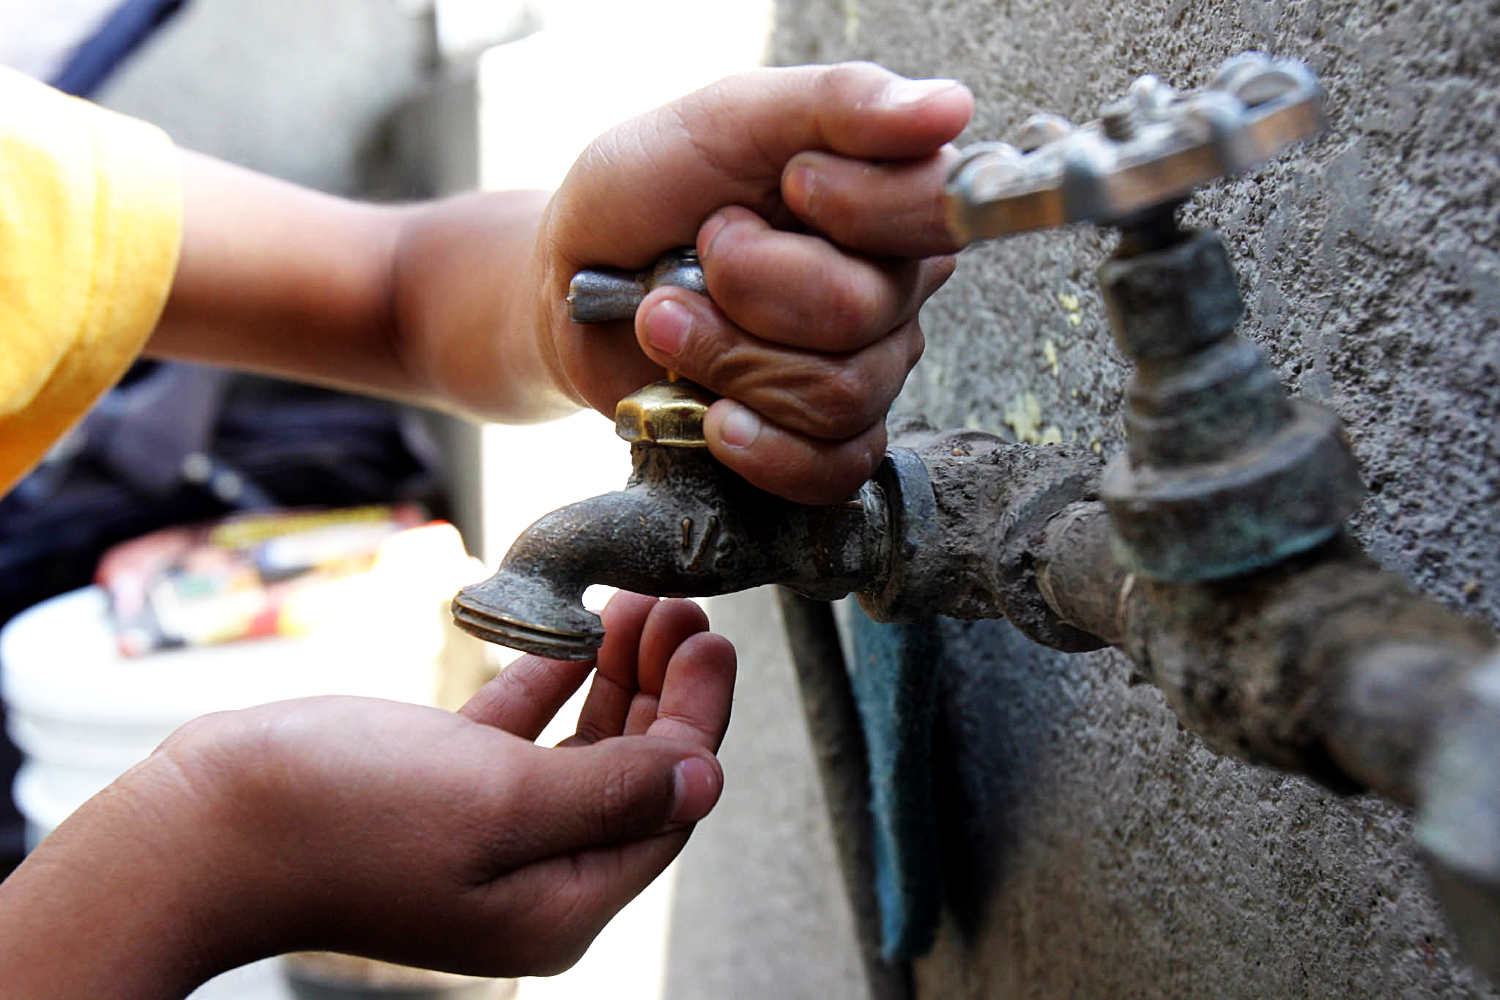 Pátzcuaro reclama devolución de cuotas de agua ante la falta del servicio y altos cobros